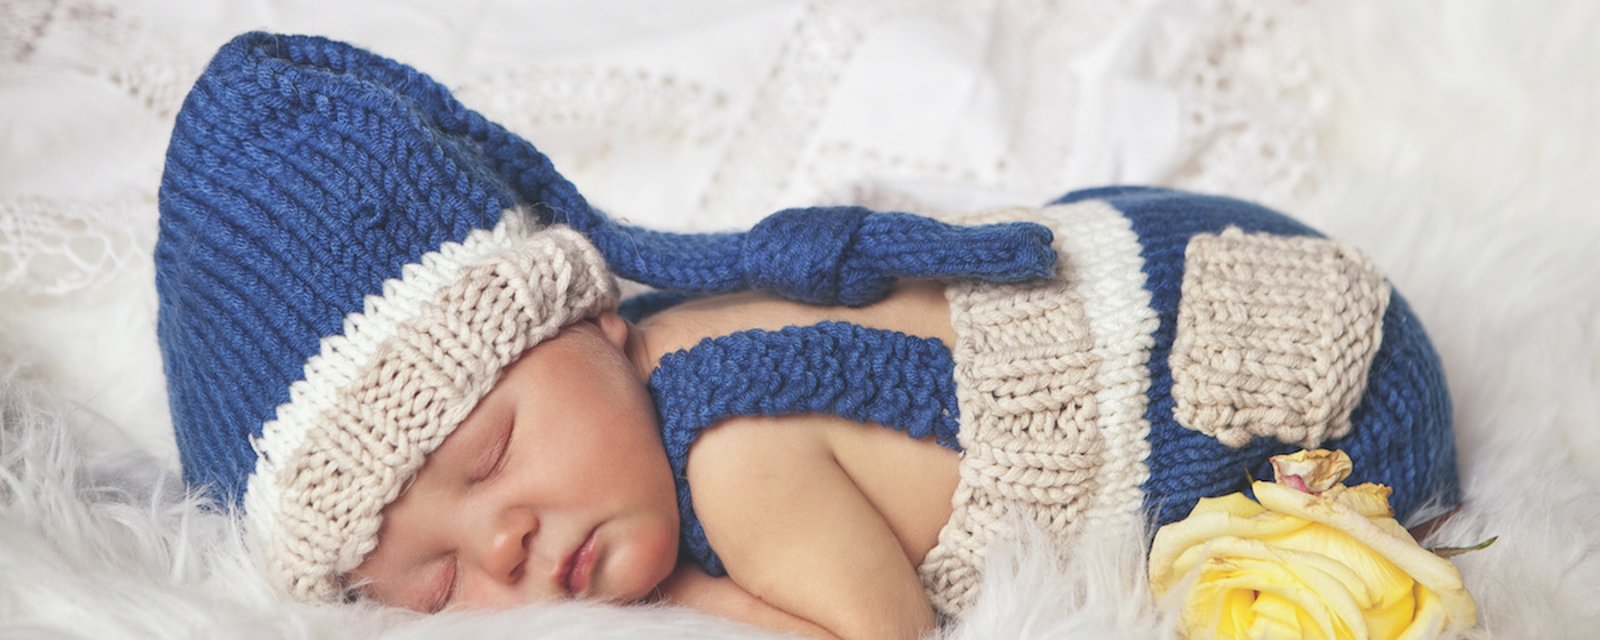 8 faits à connaitre sur les bébés nés en mars